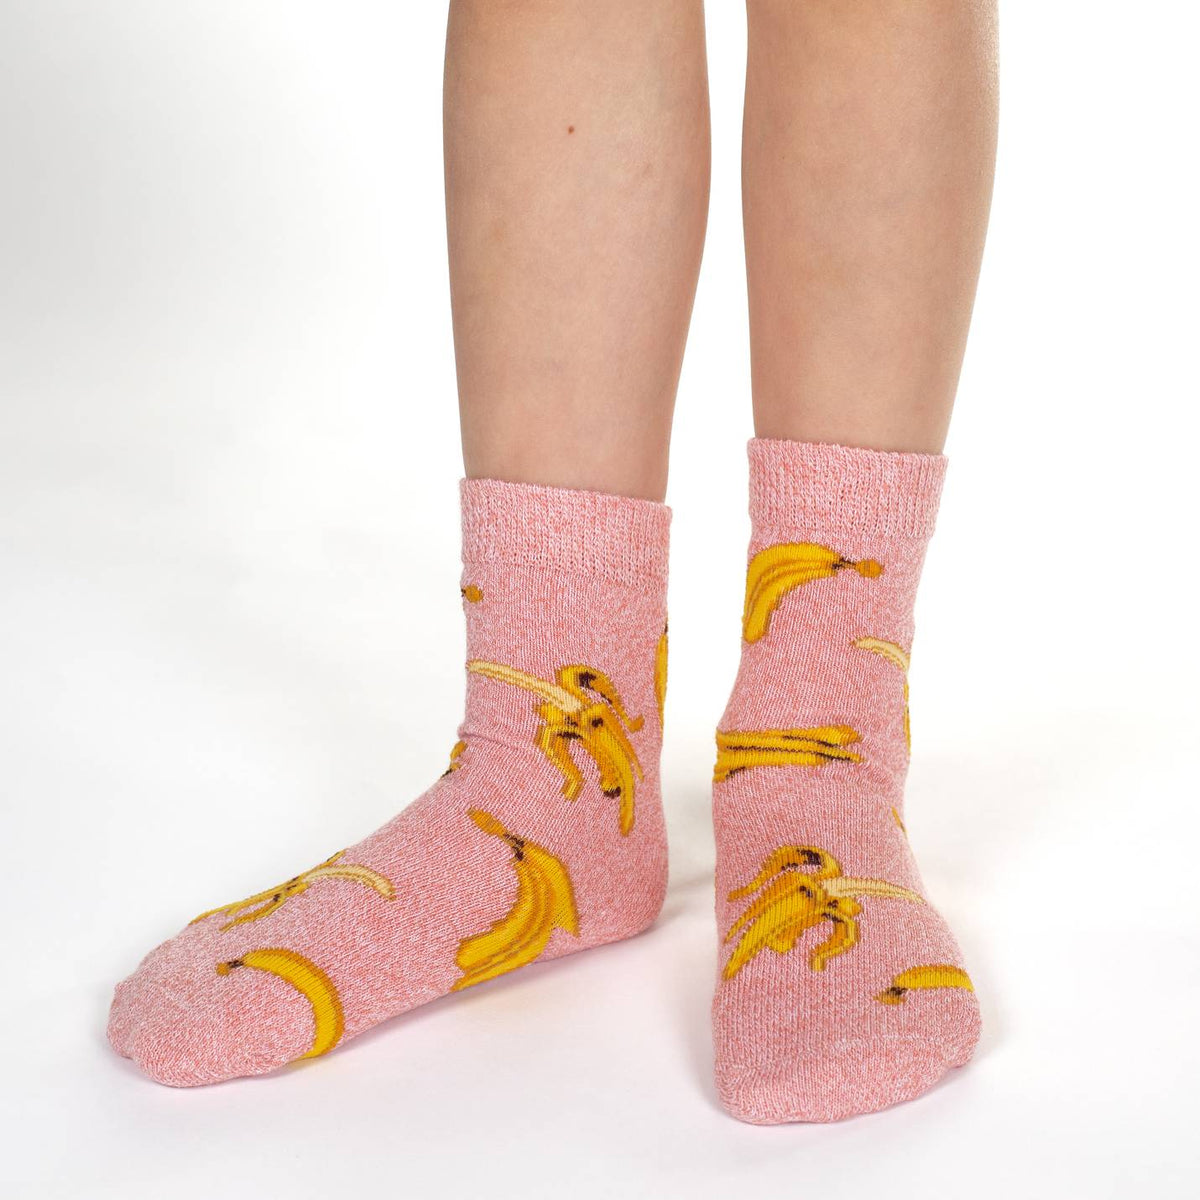 Banana Slipper Socks  Funny Non-Skid Grip Socks for Women - Cute But Crazy  Socks